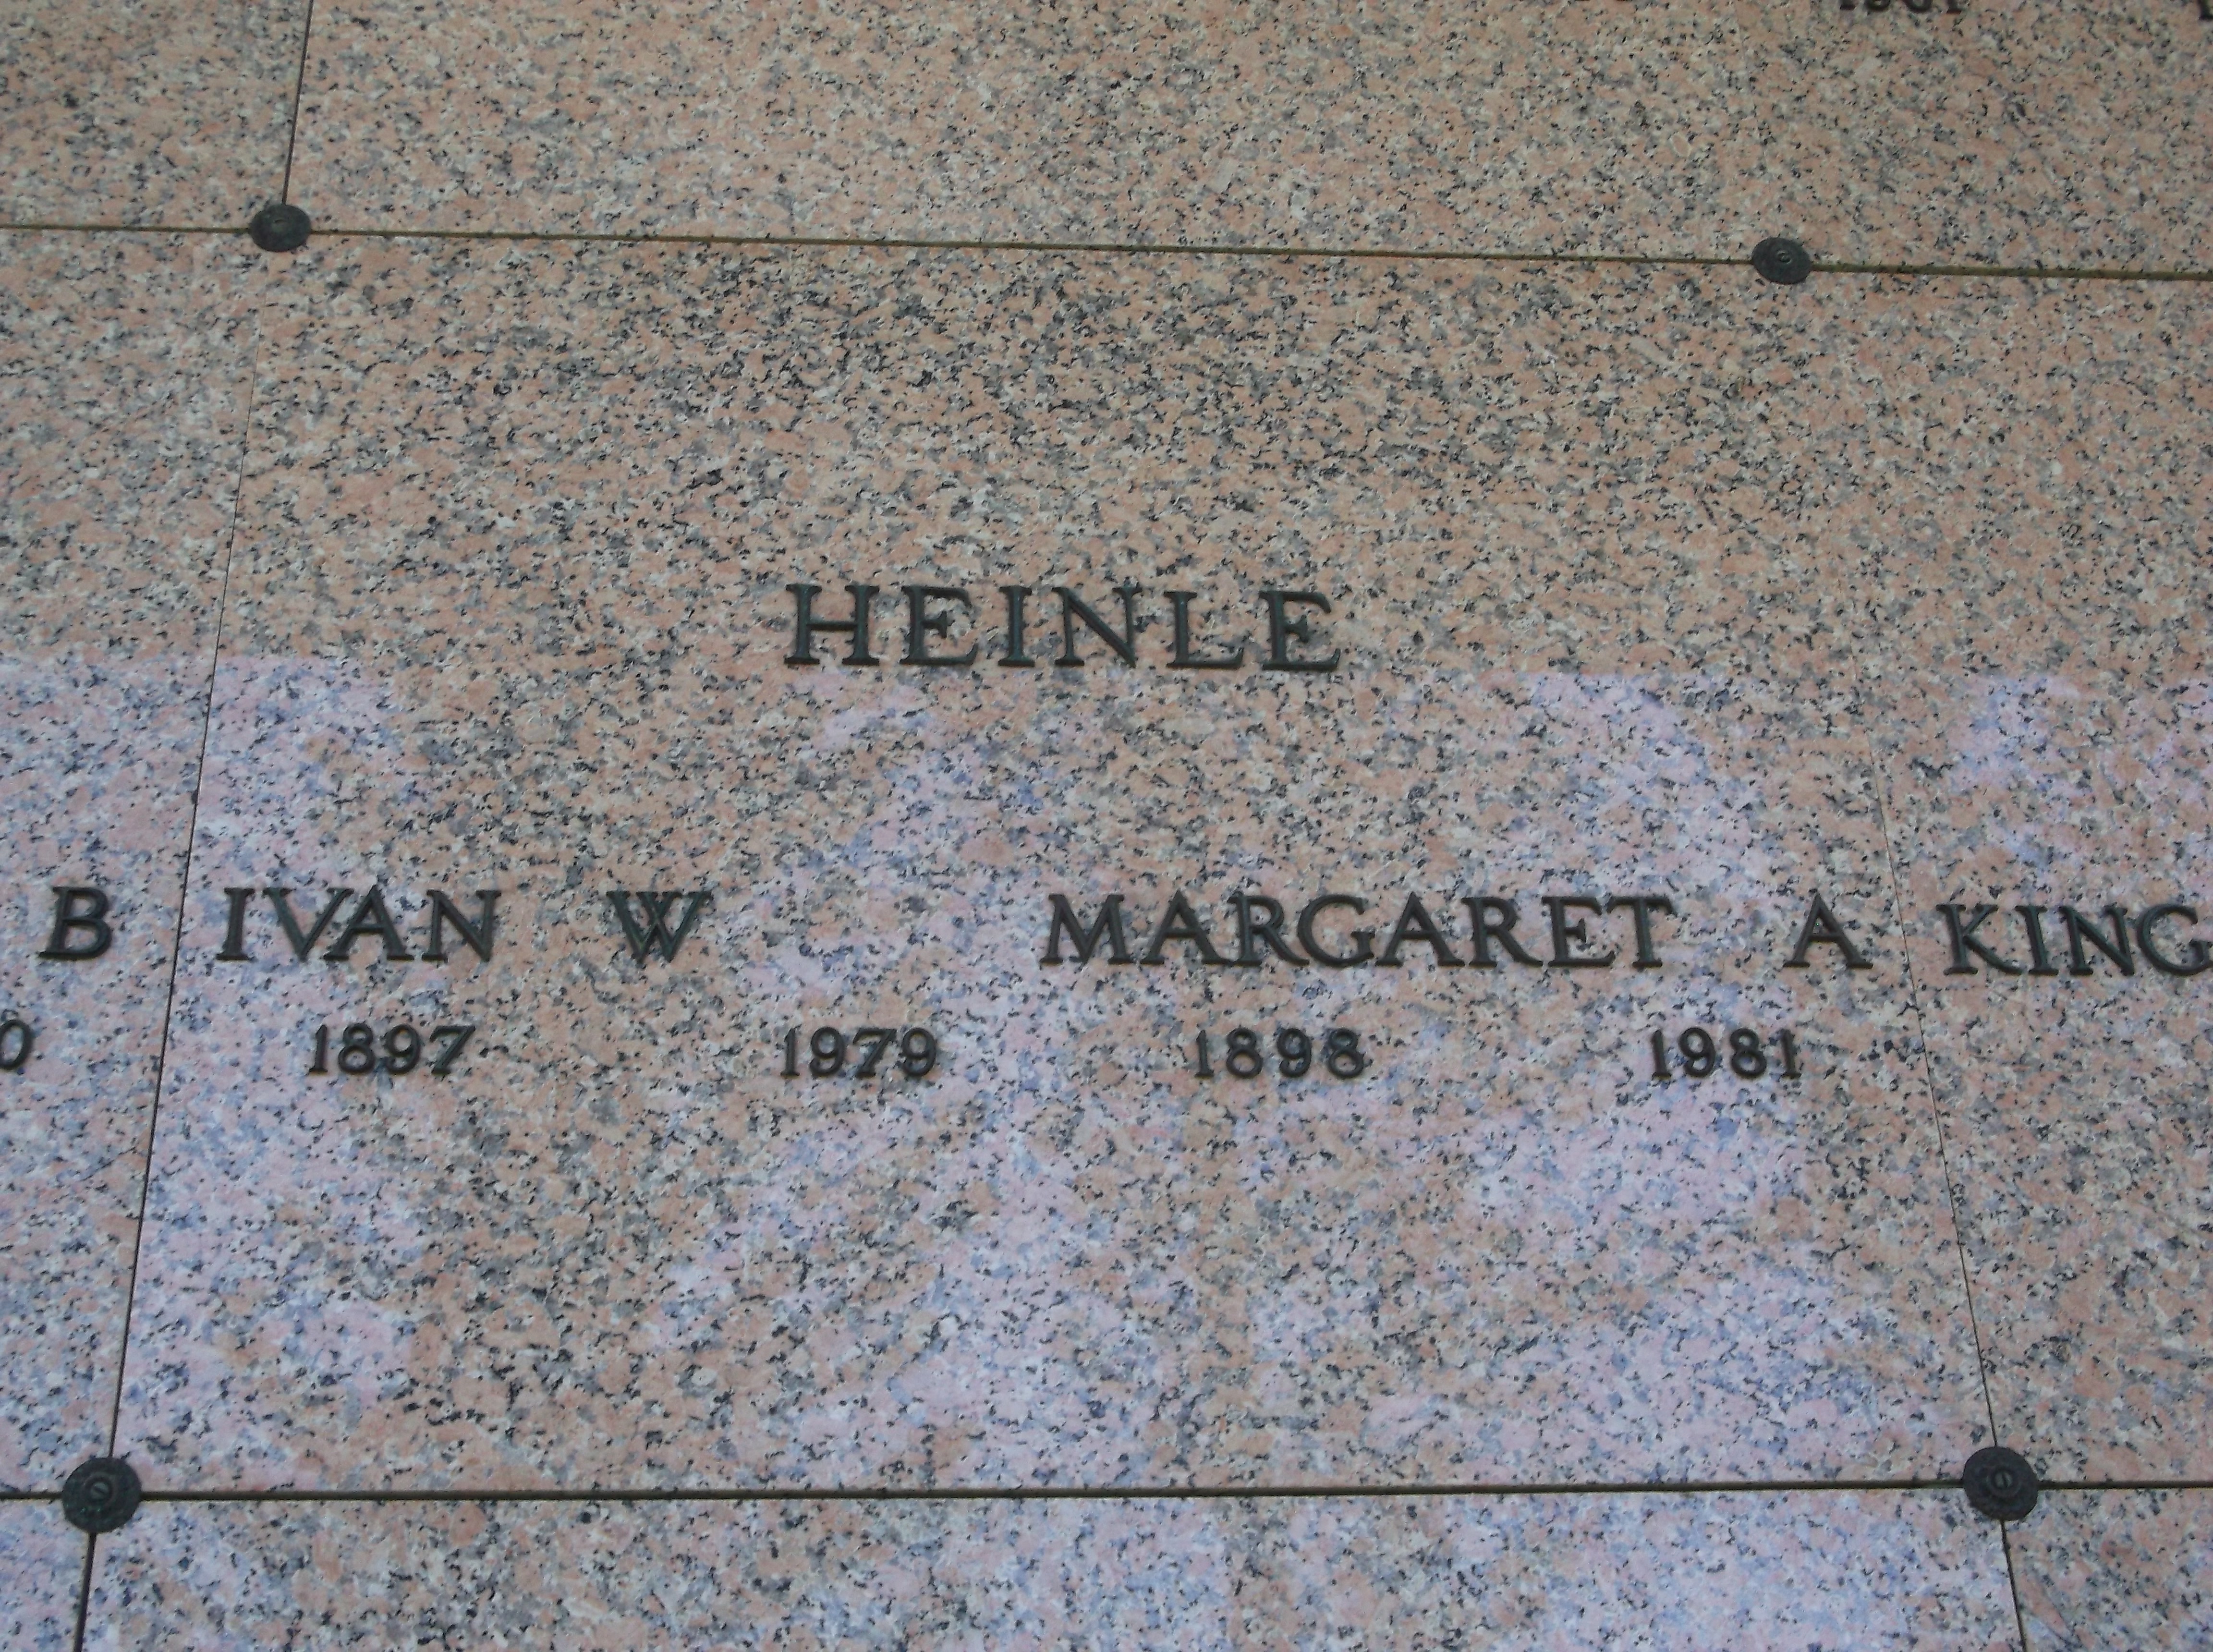 Margaret A Heinle